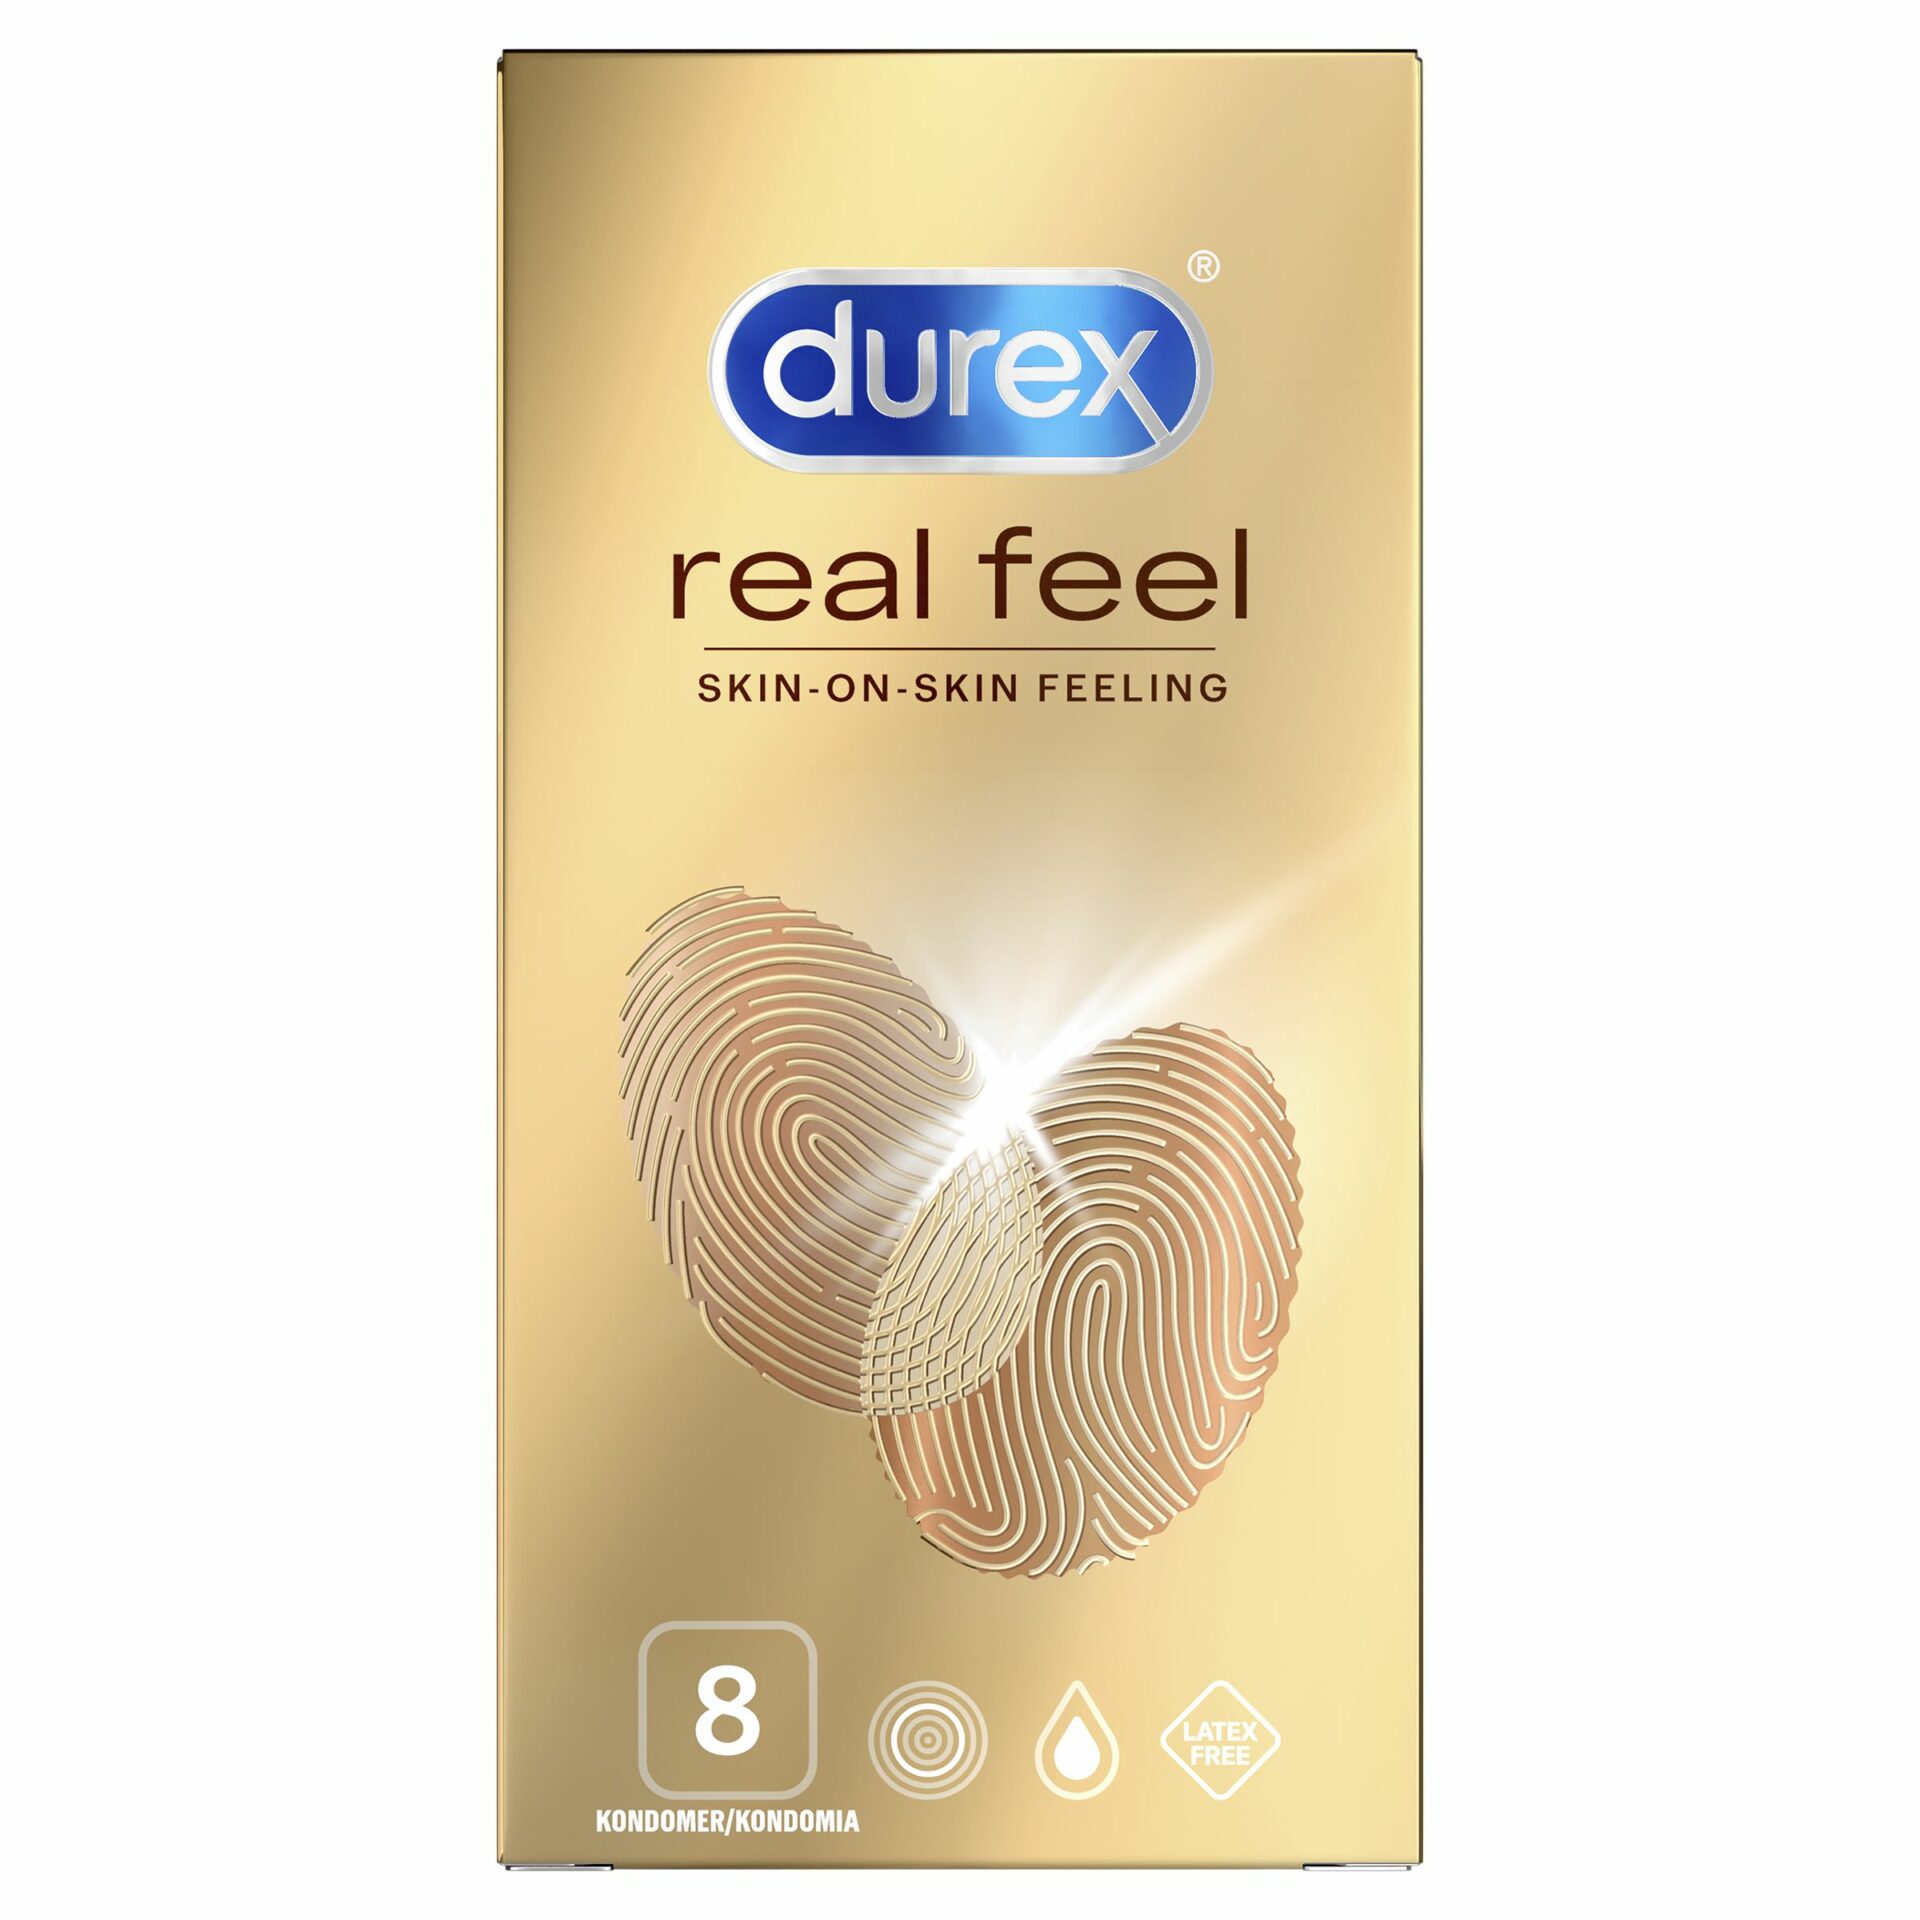 Дюрекс реал фил. Дюрекс презервативы Реал Фил №12. Durex real feel 12 шт.. Презервативы Durex Реал Фил. Презервативы дюрекс кожа к коже.